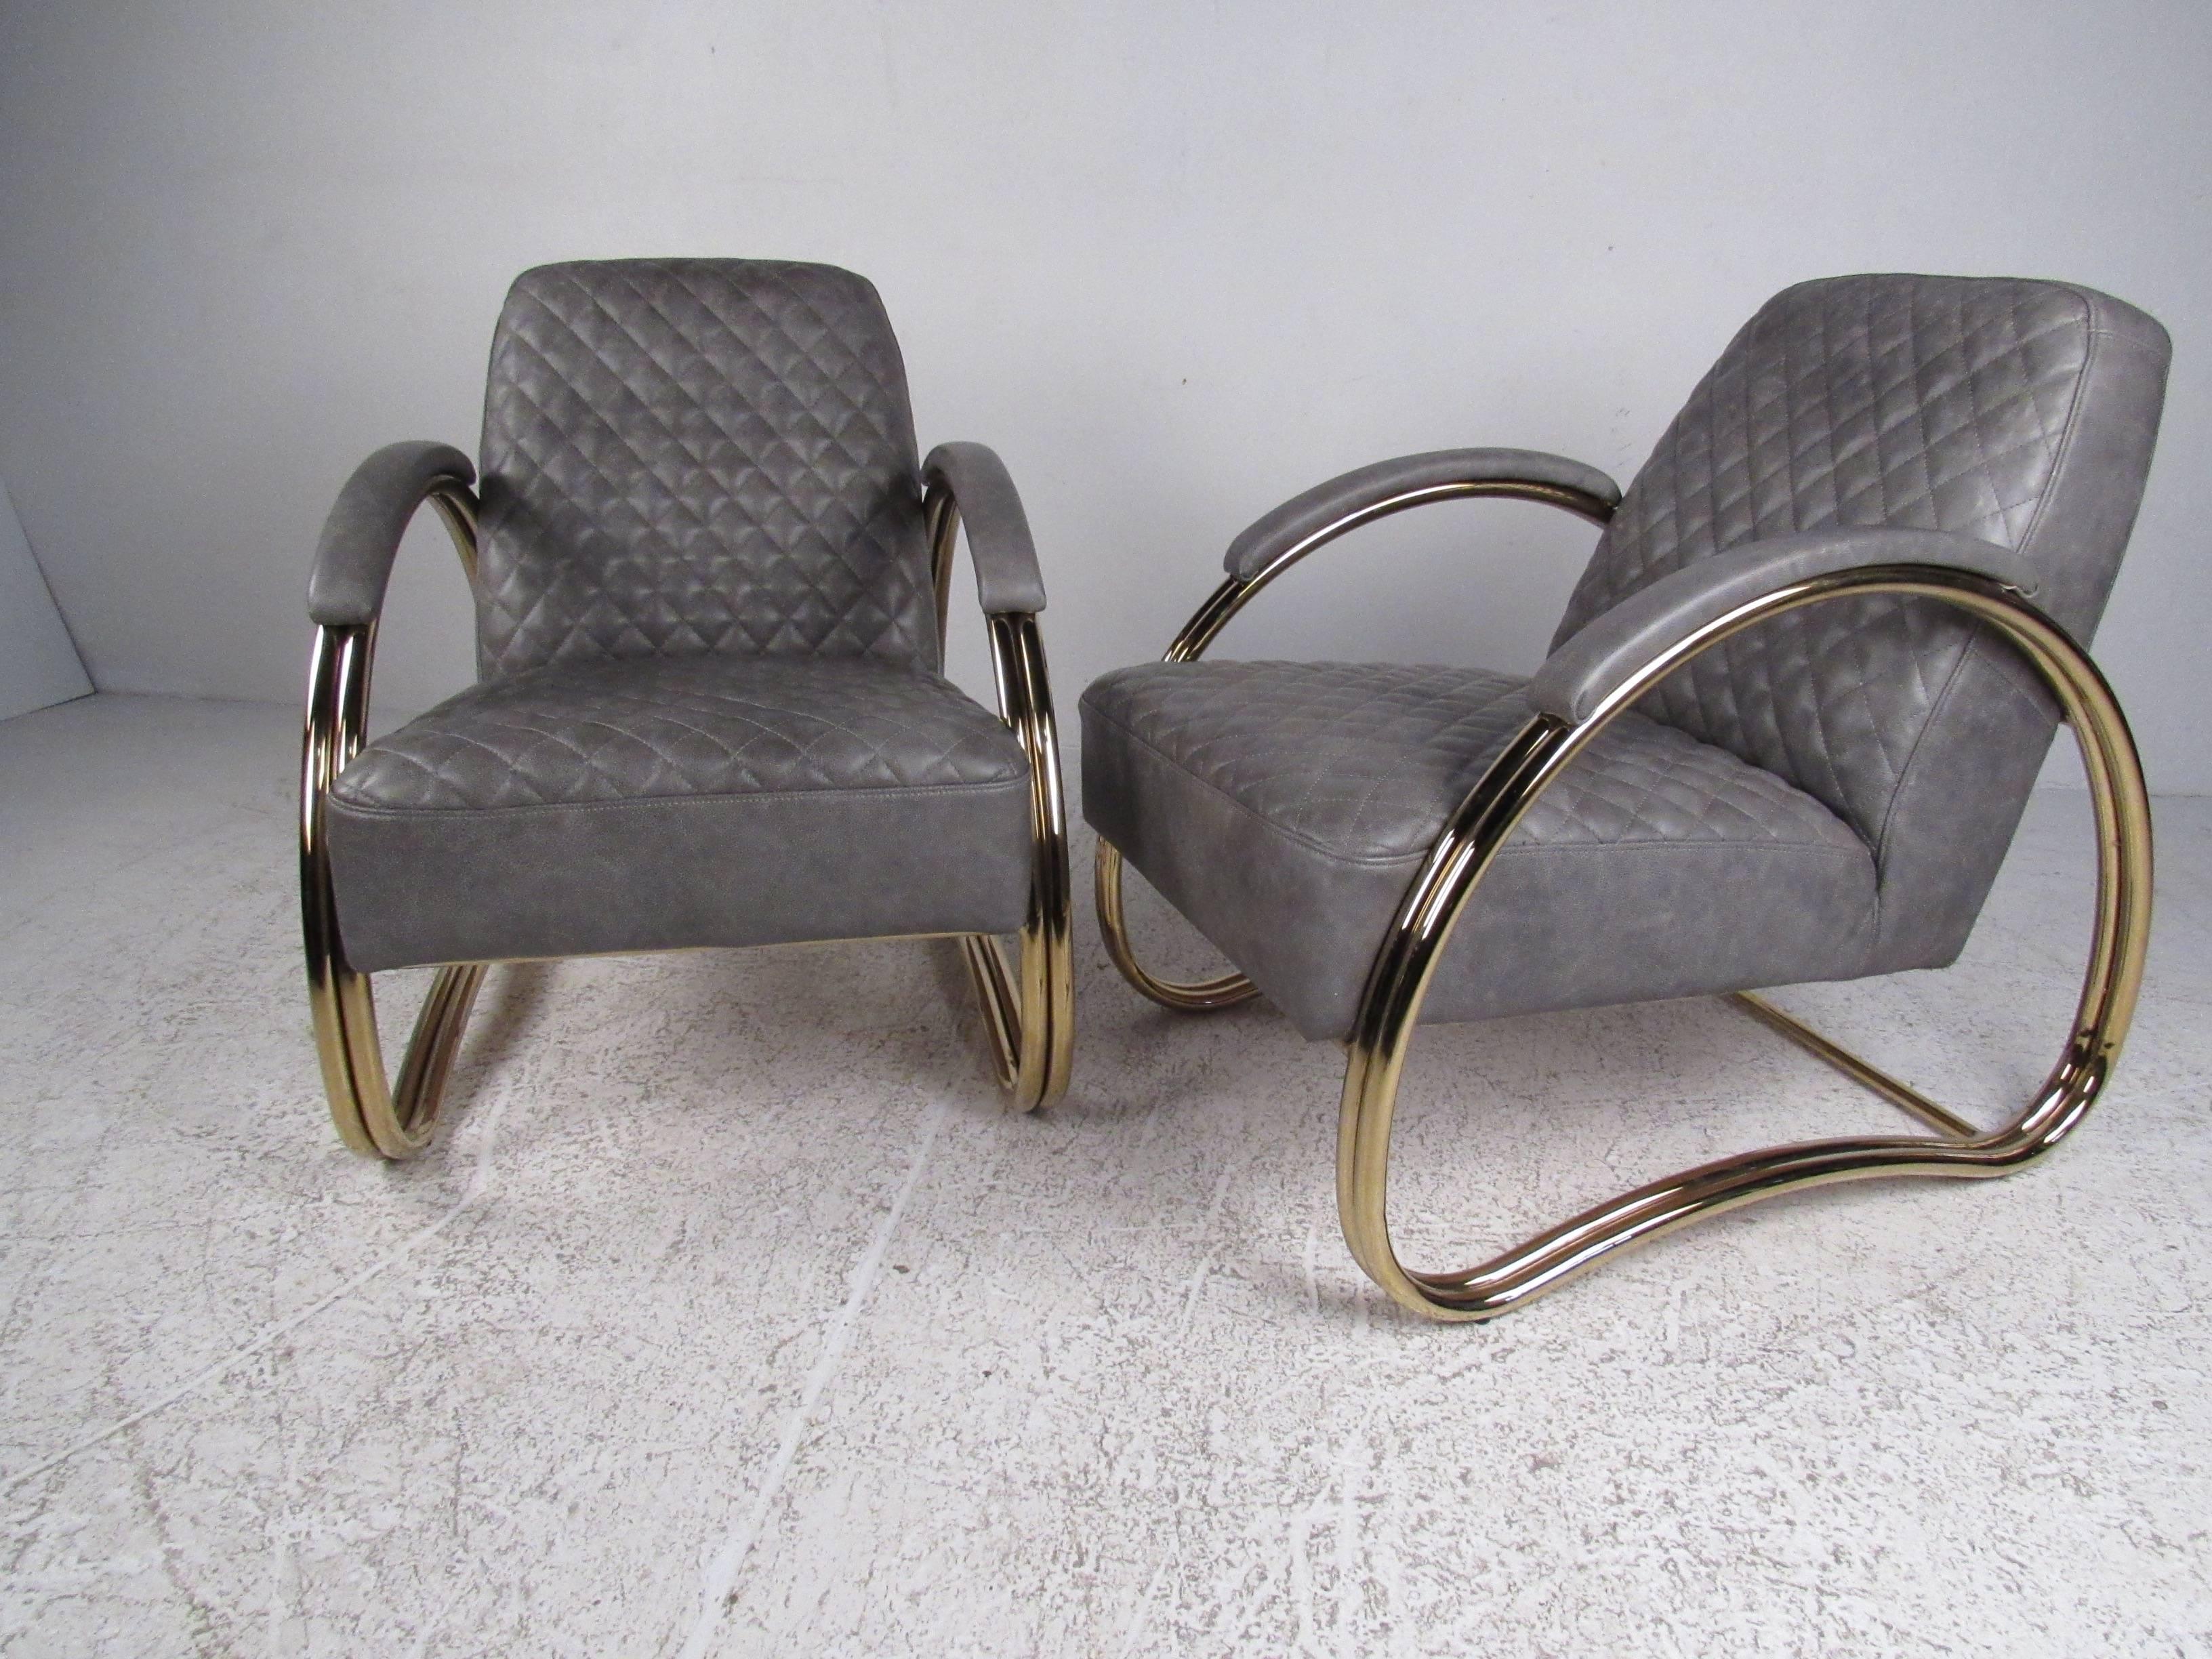 Dieses stilvolle Paar moderner Loungesessel zeichnet sich durch genähte Lederbezüge, einzigartige, messingfarbene Gestelle und bequeme Sitzproportionen aus. Der elegante Midcentury-Stil ist eine einzigartige Ergänzung für Sitzbereiche zu Hause oder